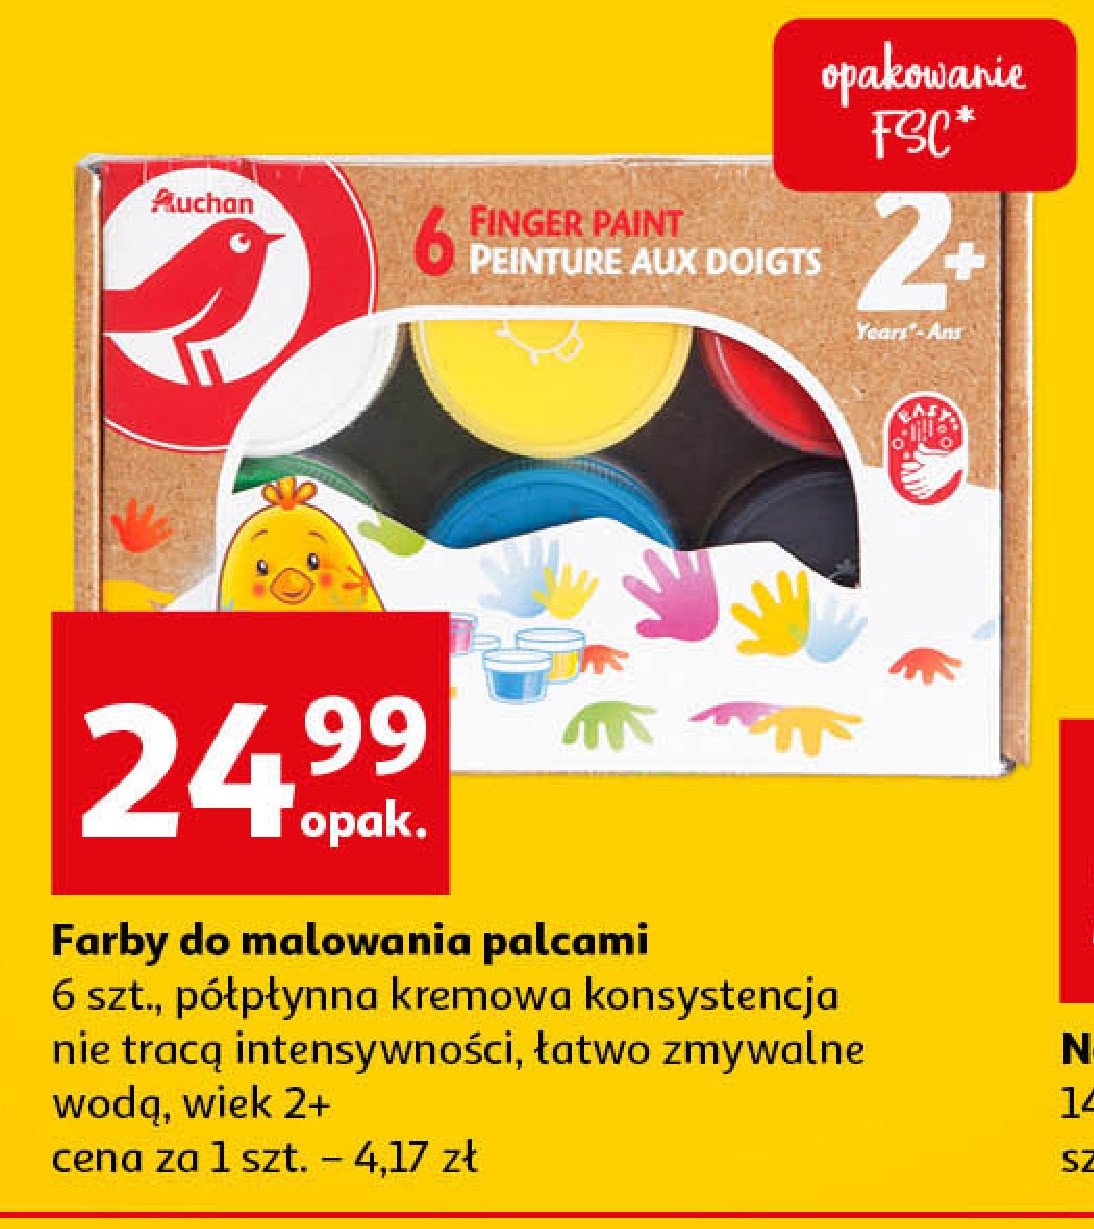 Farby do malowania palcami Auchan różnorodne (logo czerwone) promocja